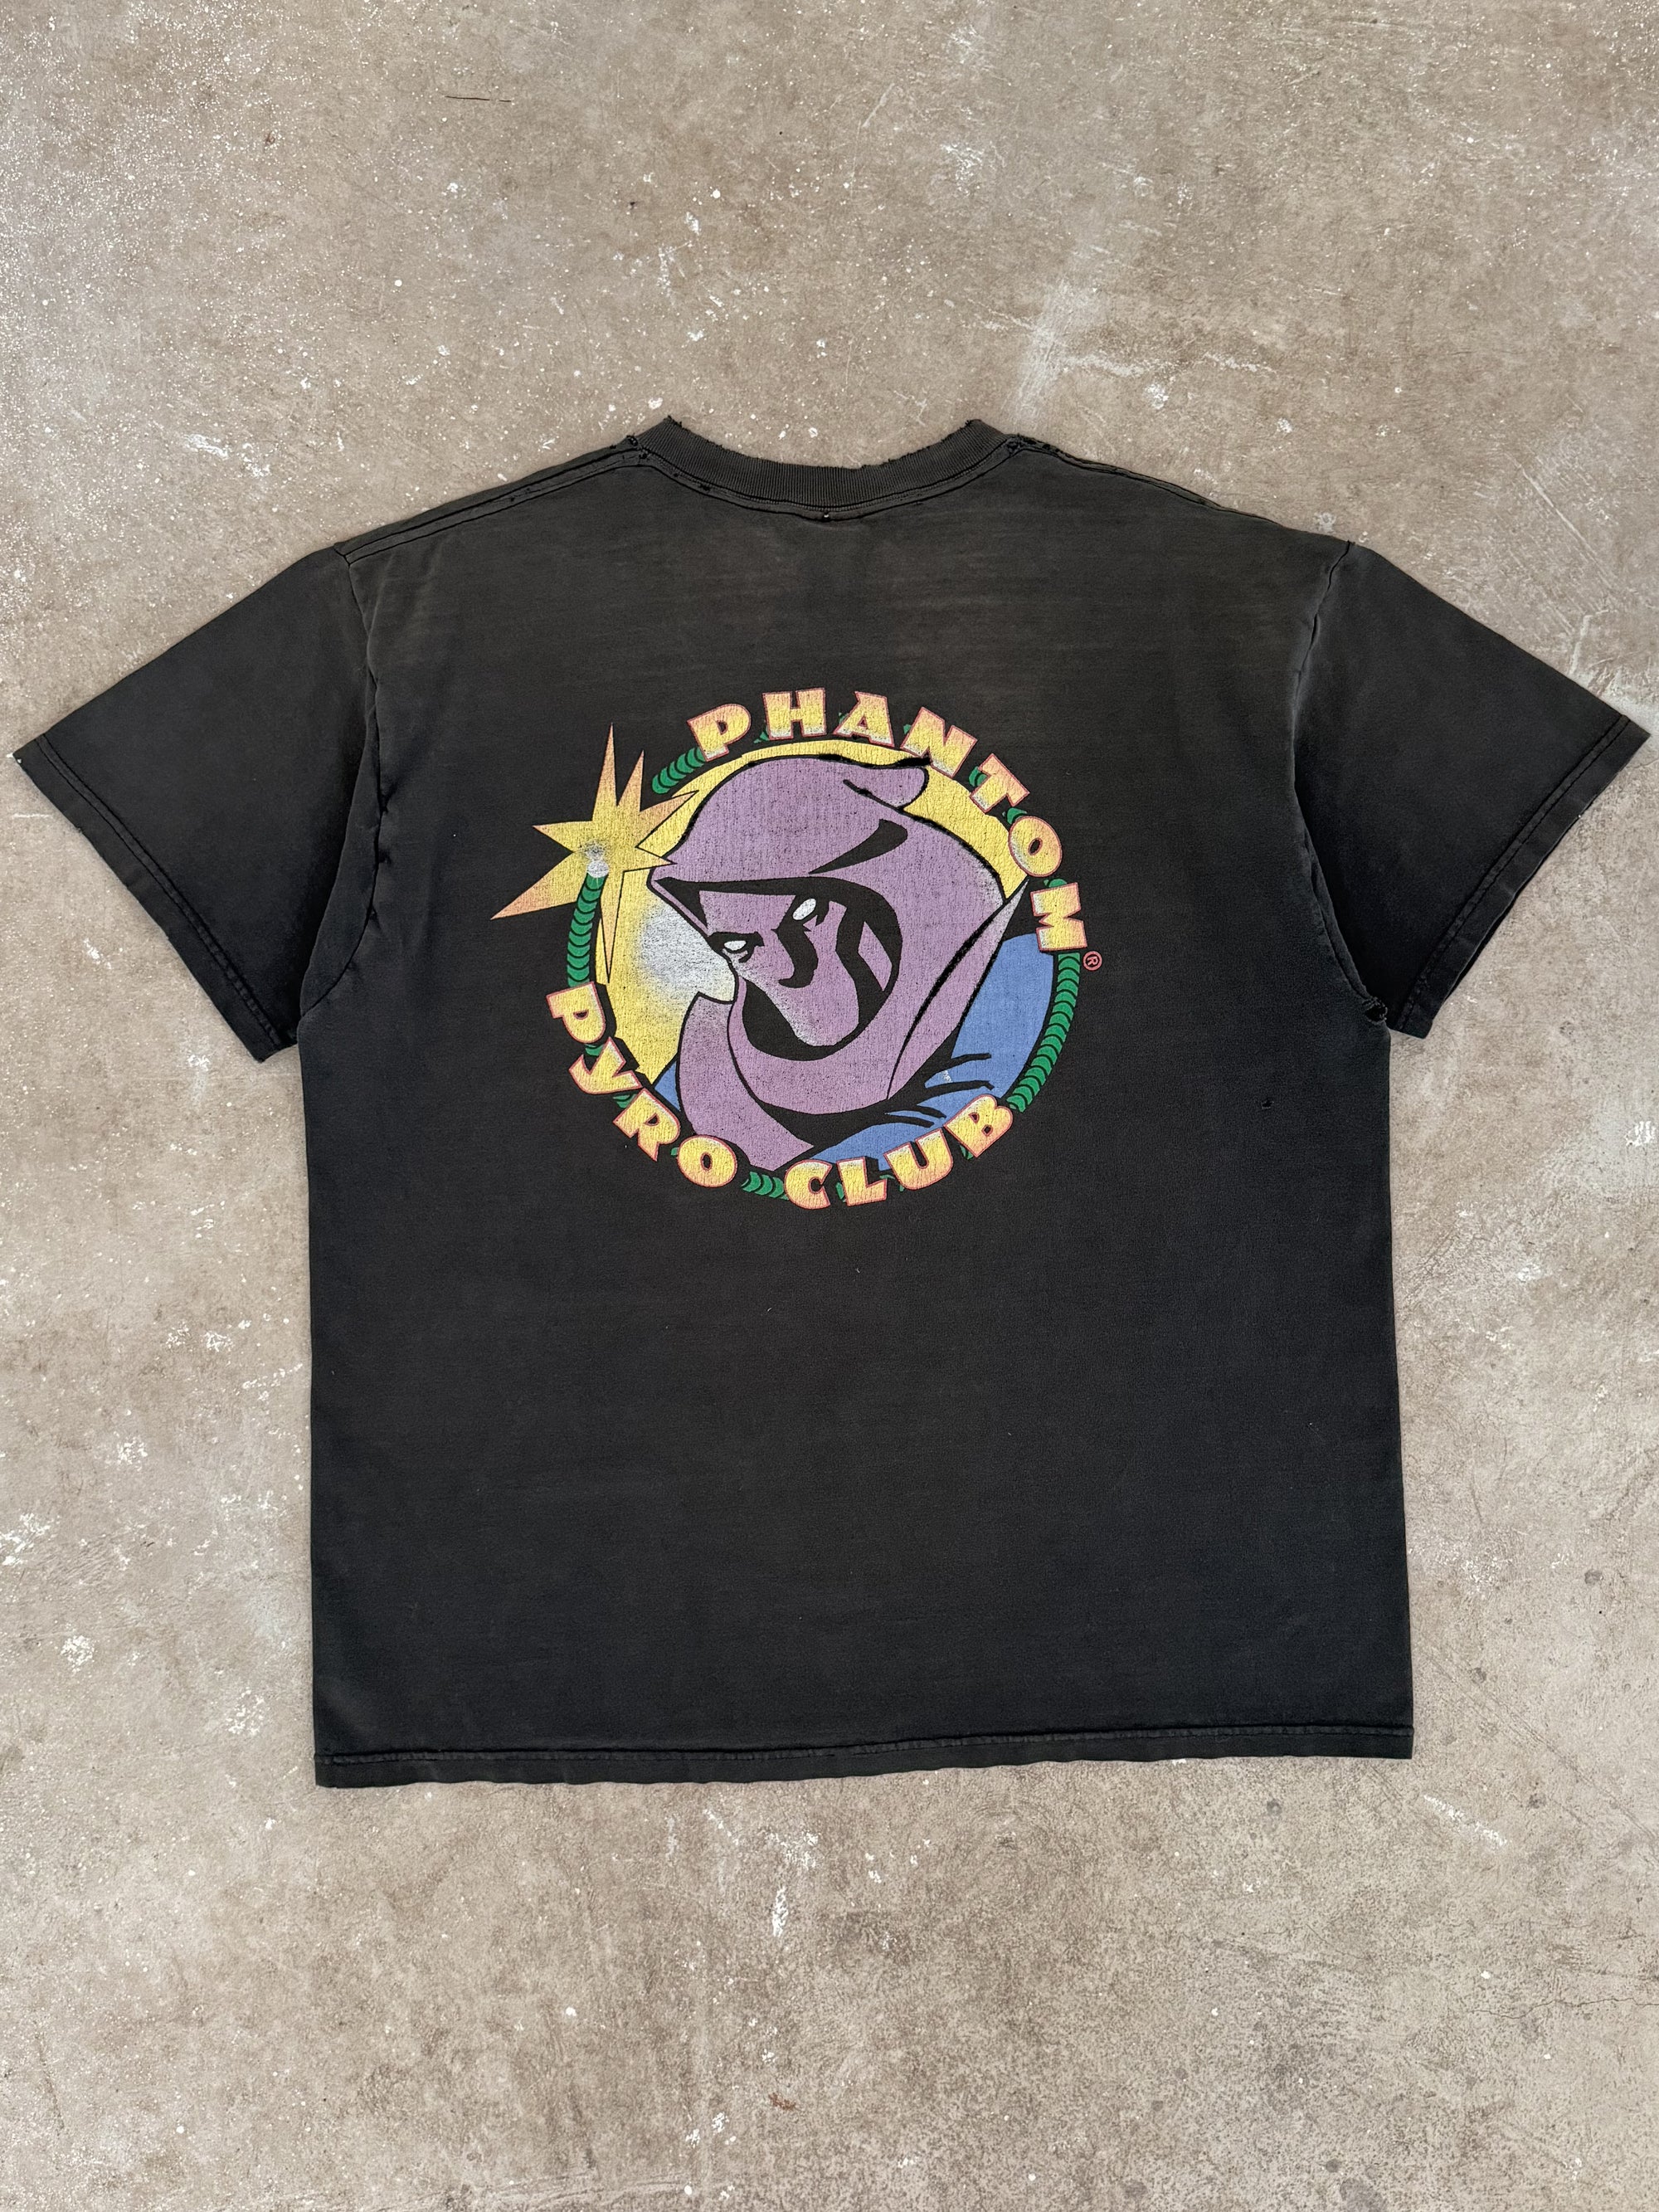 1990s "Phantom Pyro Club" Distressed Faded Tee (XL)